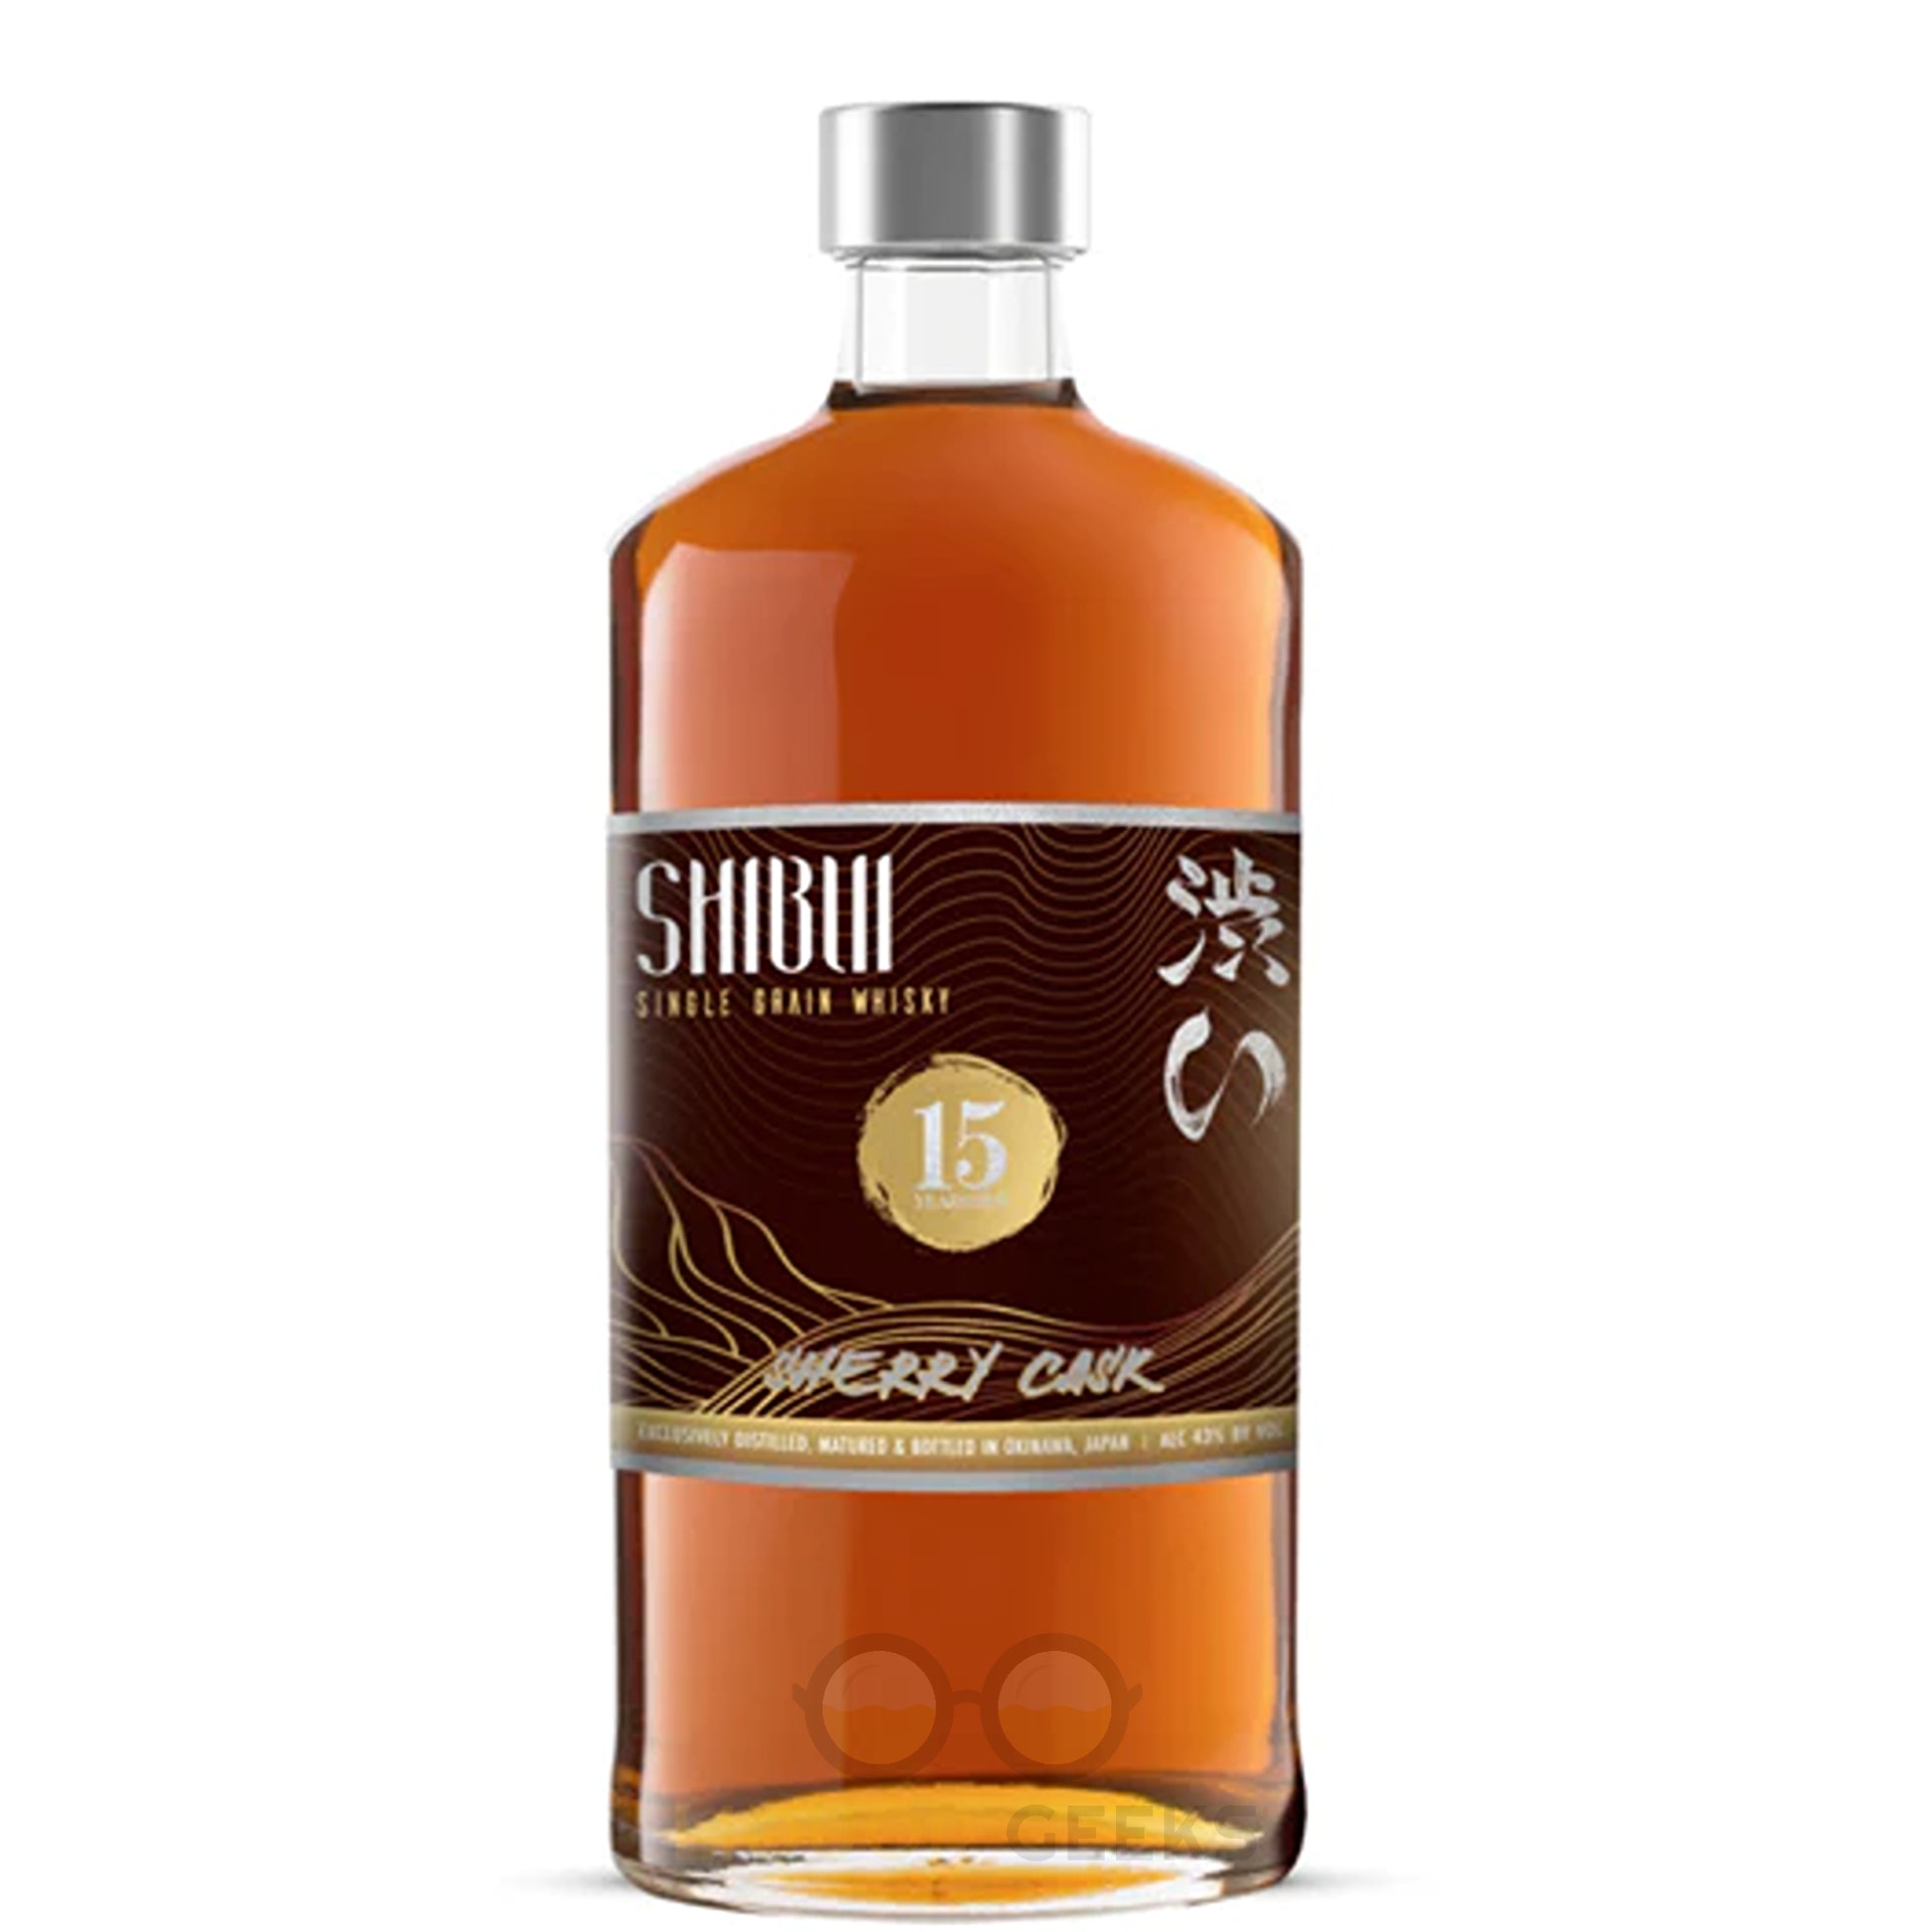 Shibui 15 Year Sherry Cask Japanese Whiskey - Liquor Geeks